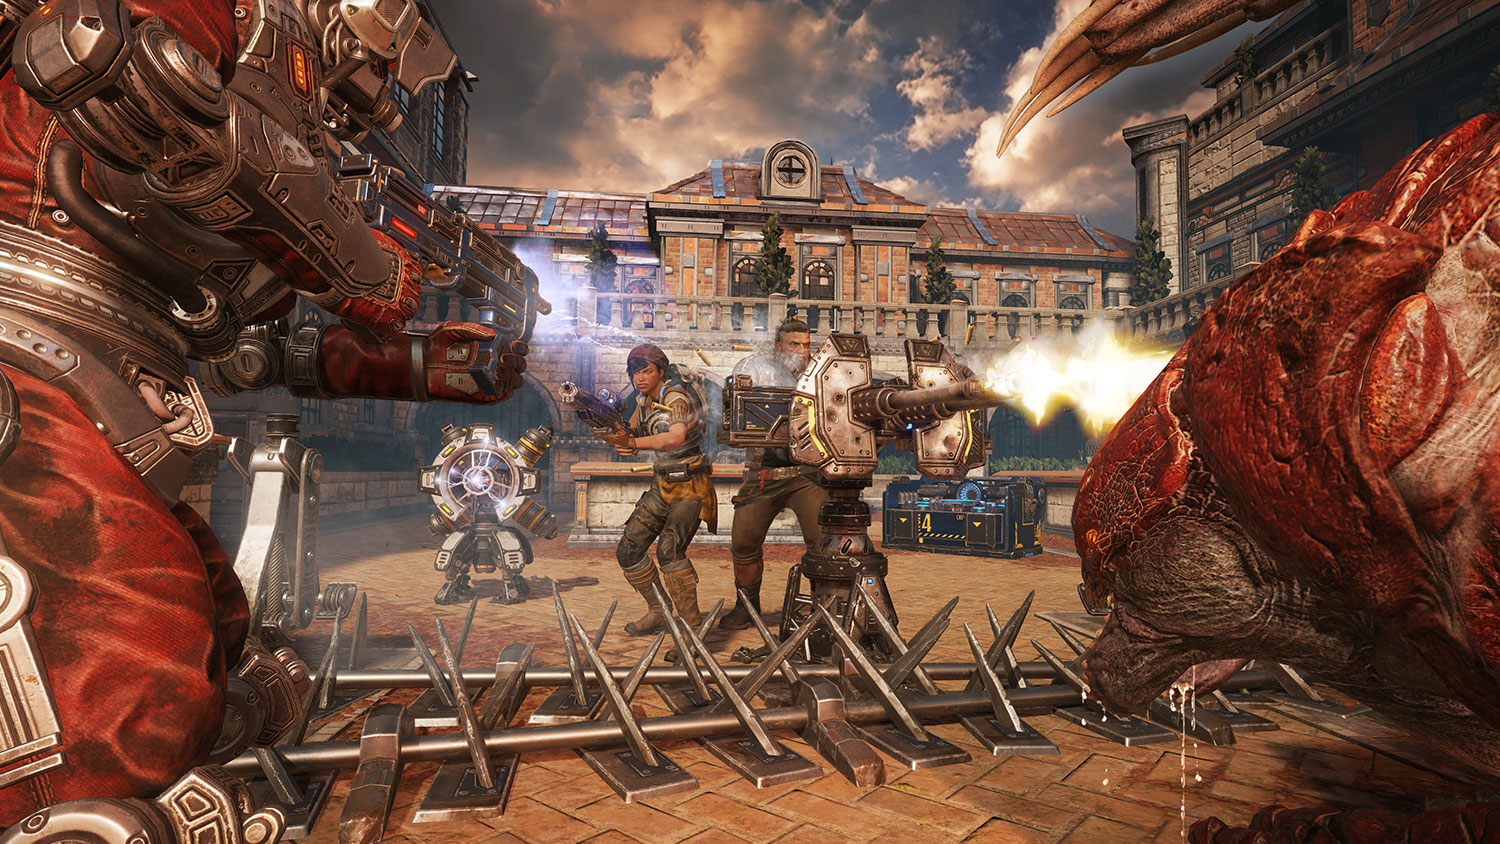 Gears of War 4 Horde Mode Hands-On Review